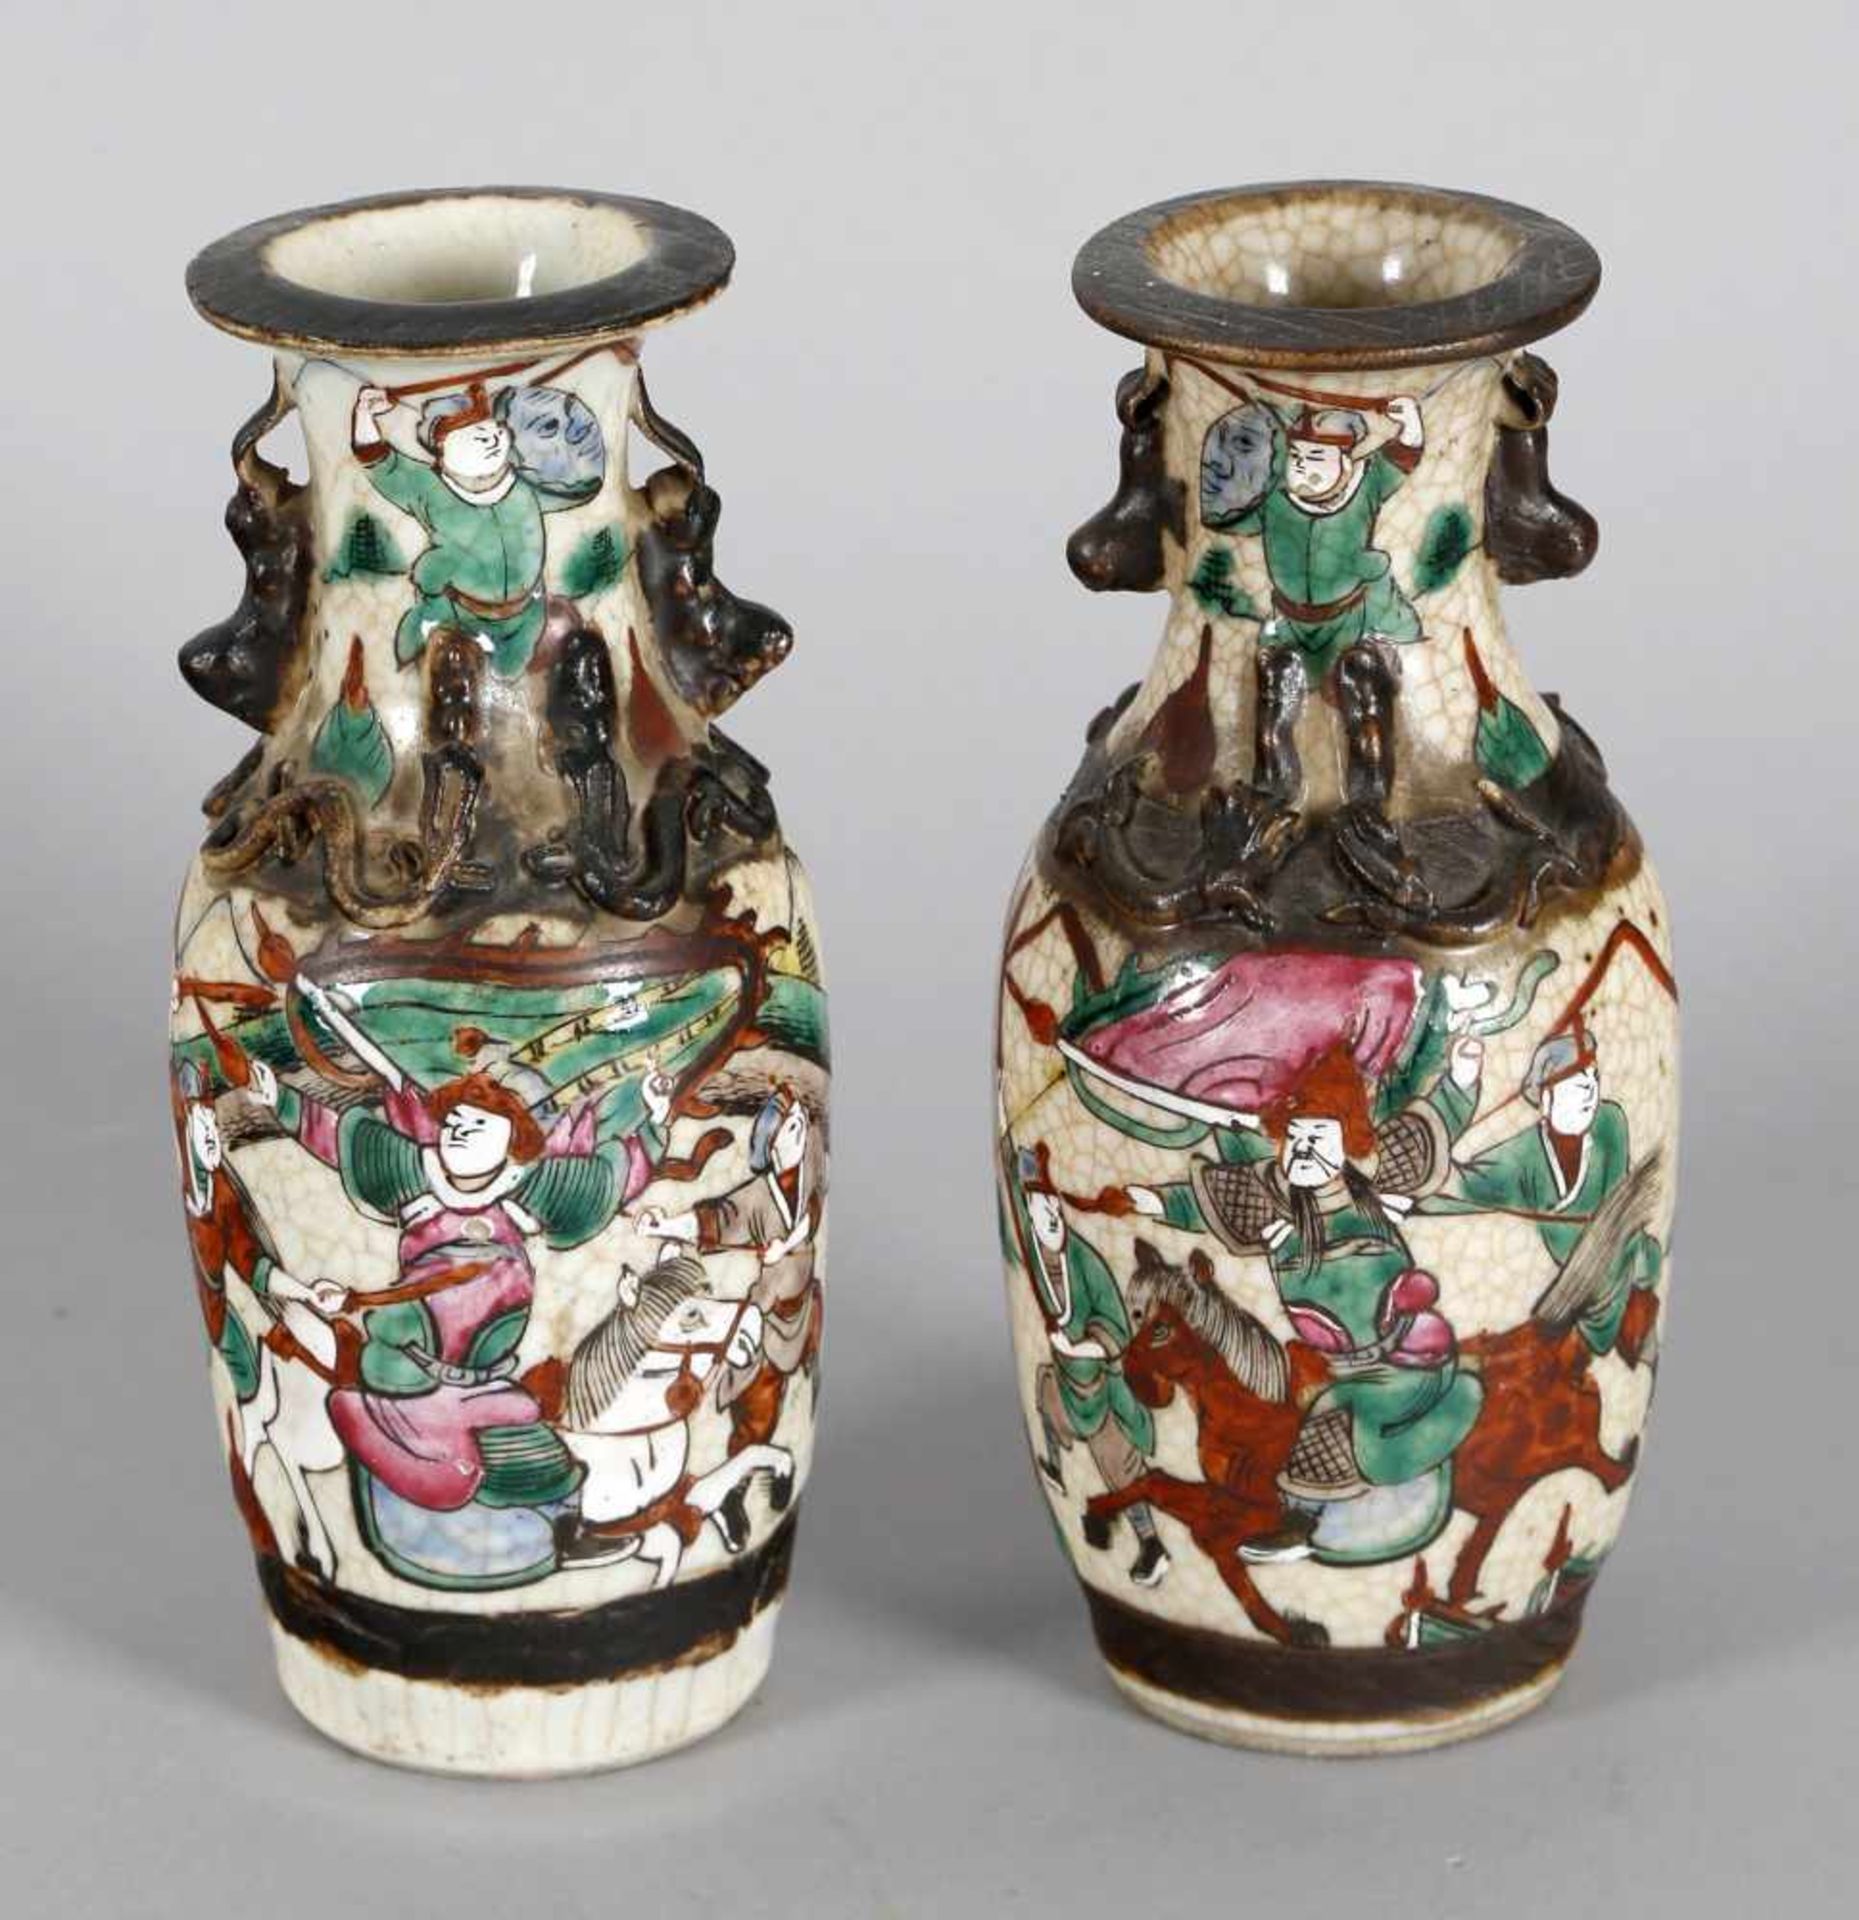 Paar chinesische Vasen, Porzellan, um 1860-80Kampfszenen-Dekor in bunten Emailfarben auf weißem